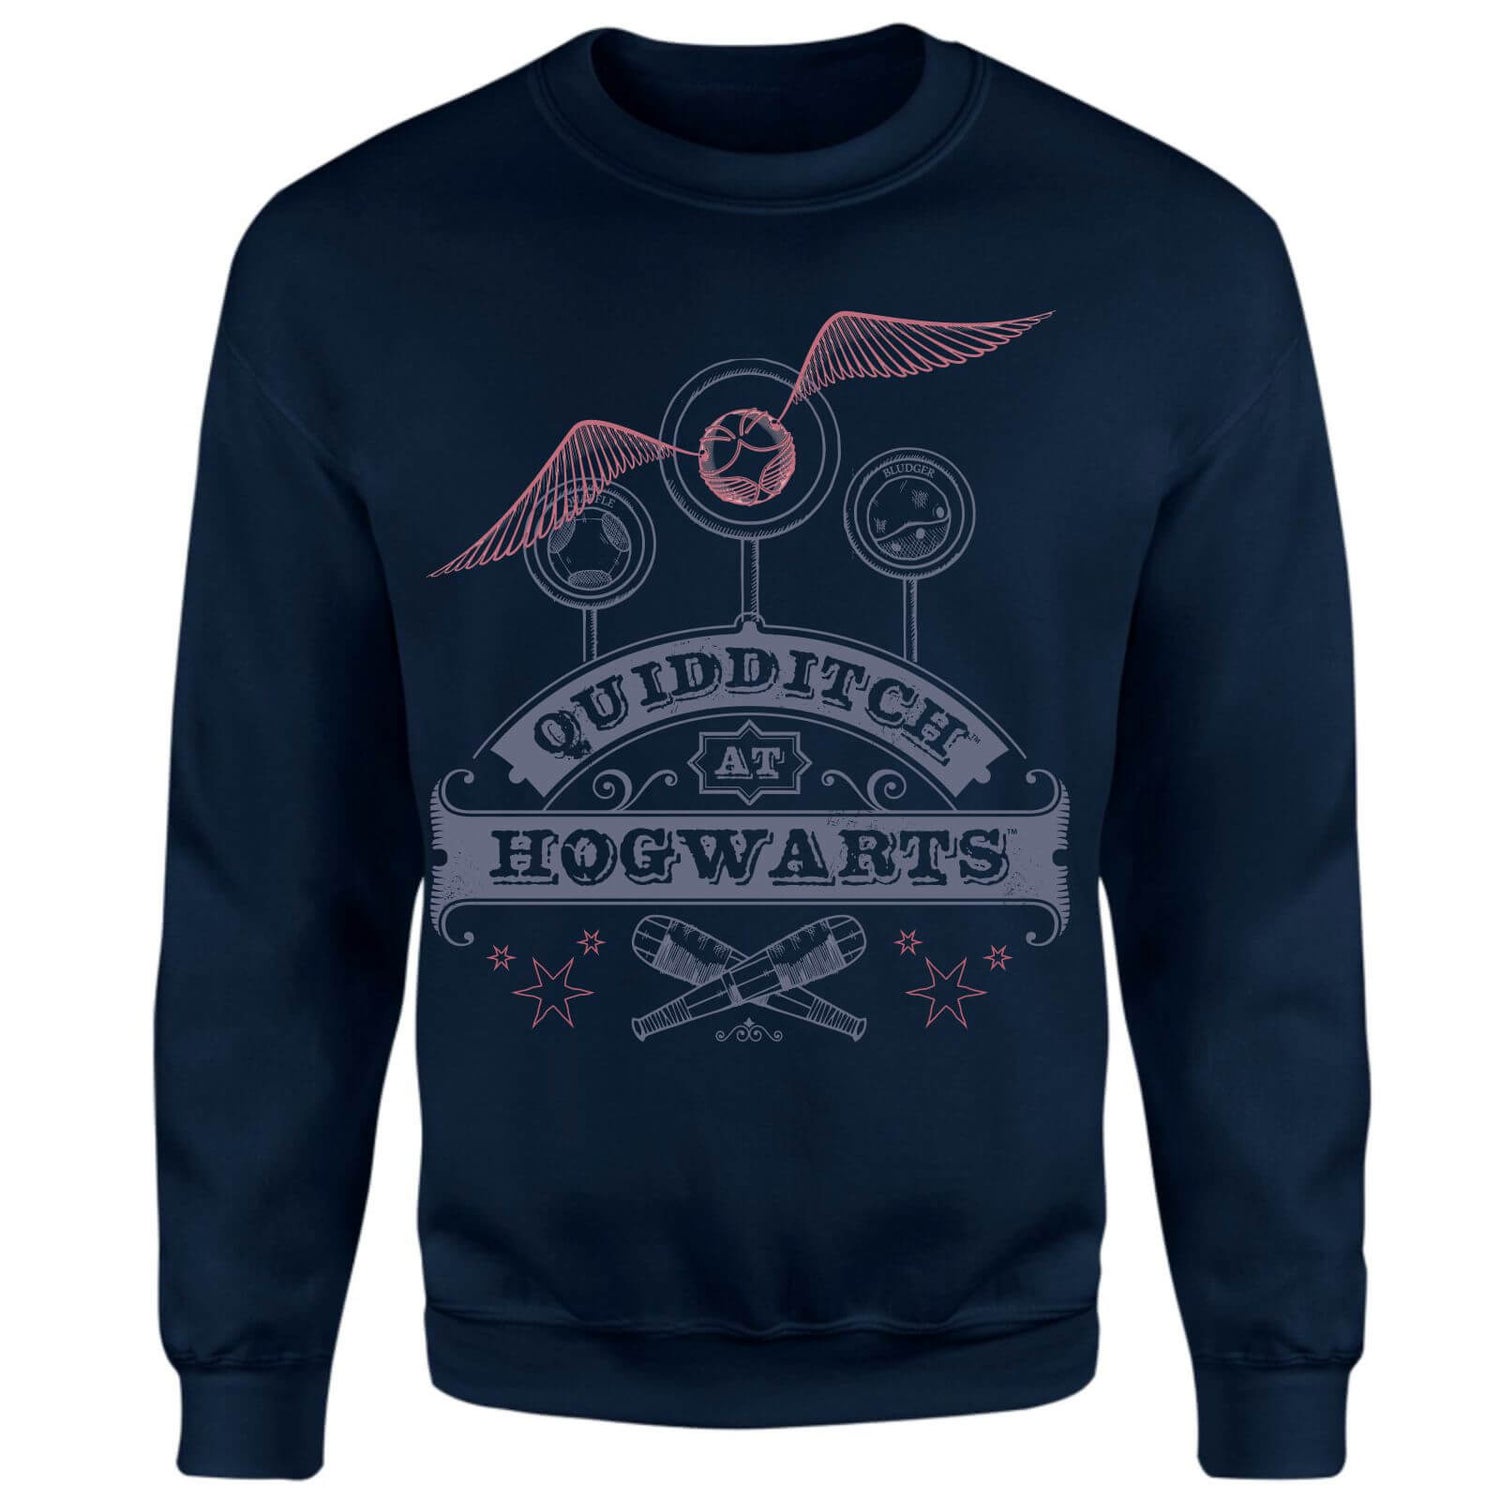 Harry Potter Quidditch At Hogwarts Sweatshirt - Navy